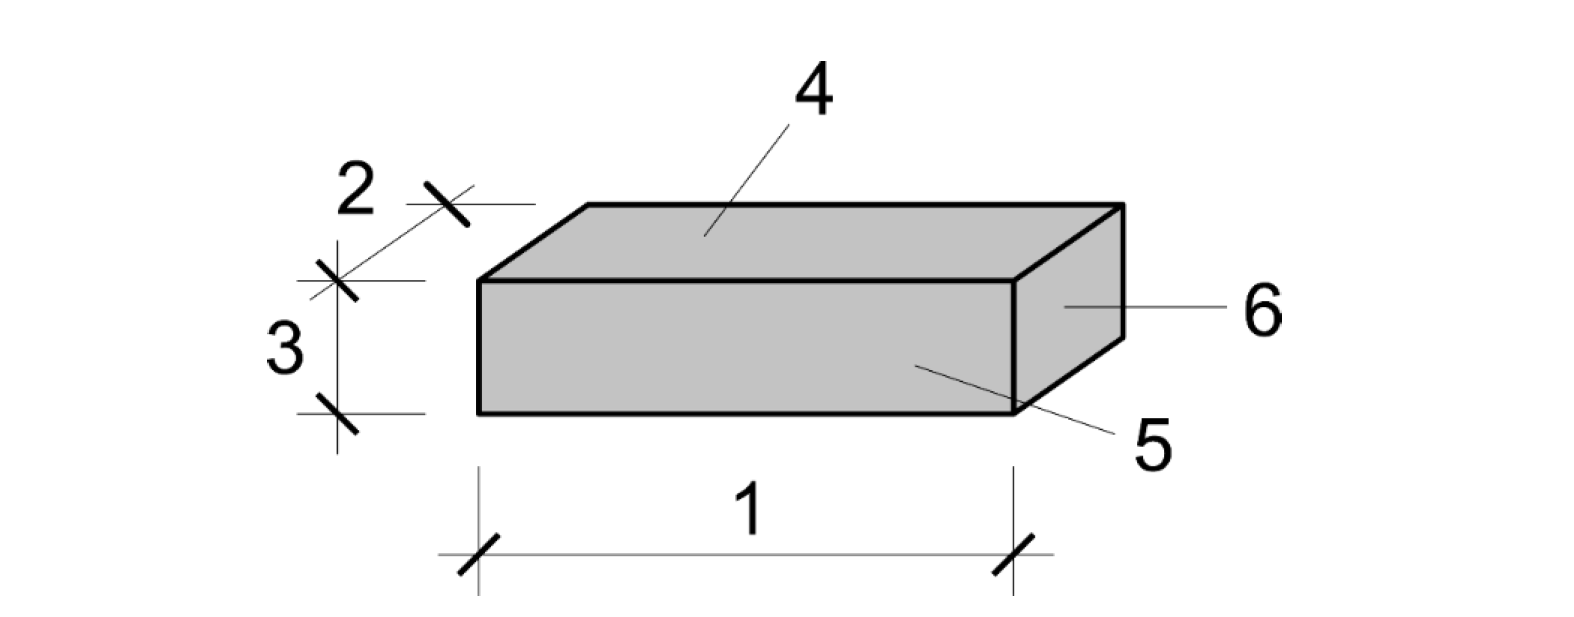 Mauerziegel – Maße und Oberflächen ÖNORM EN 771-1 